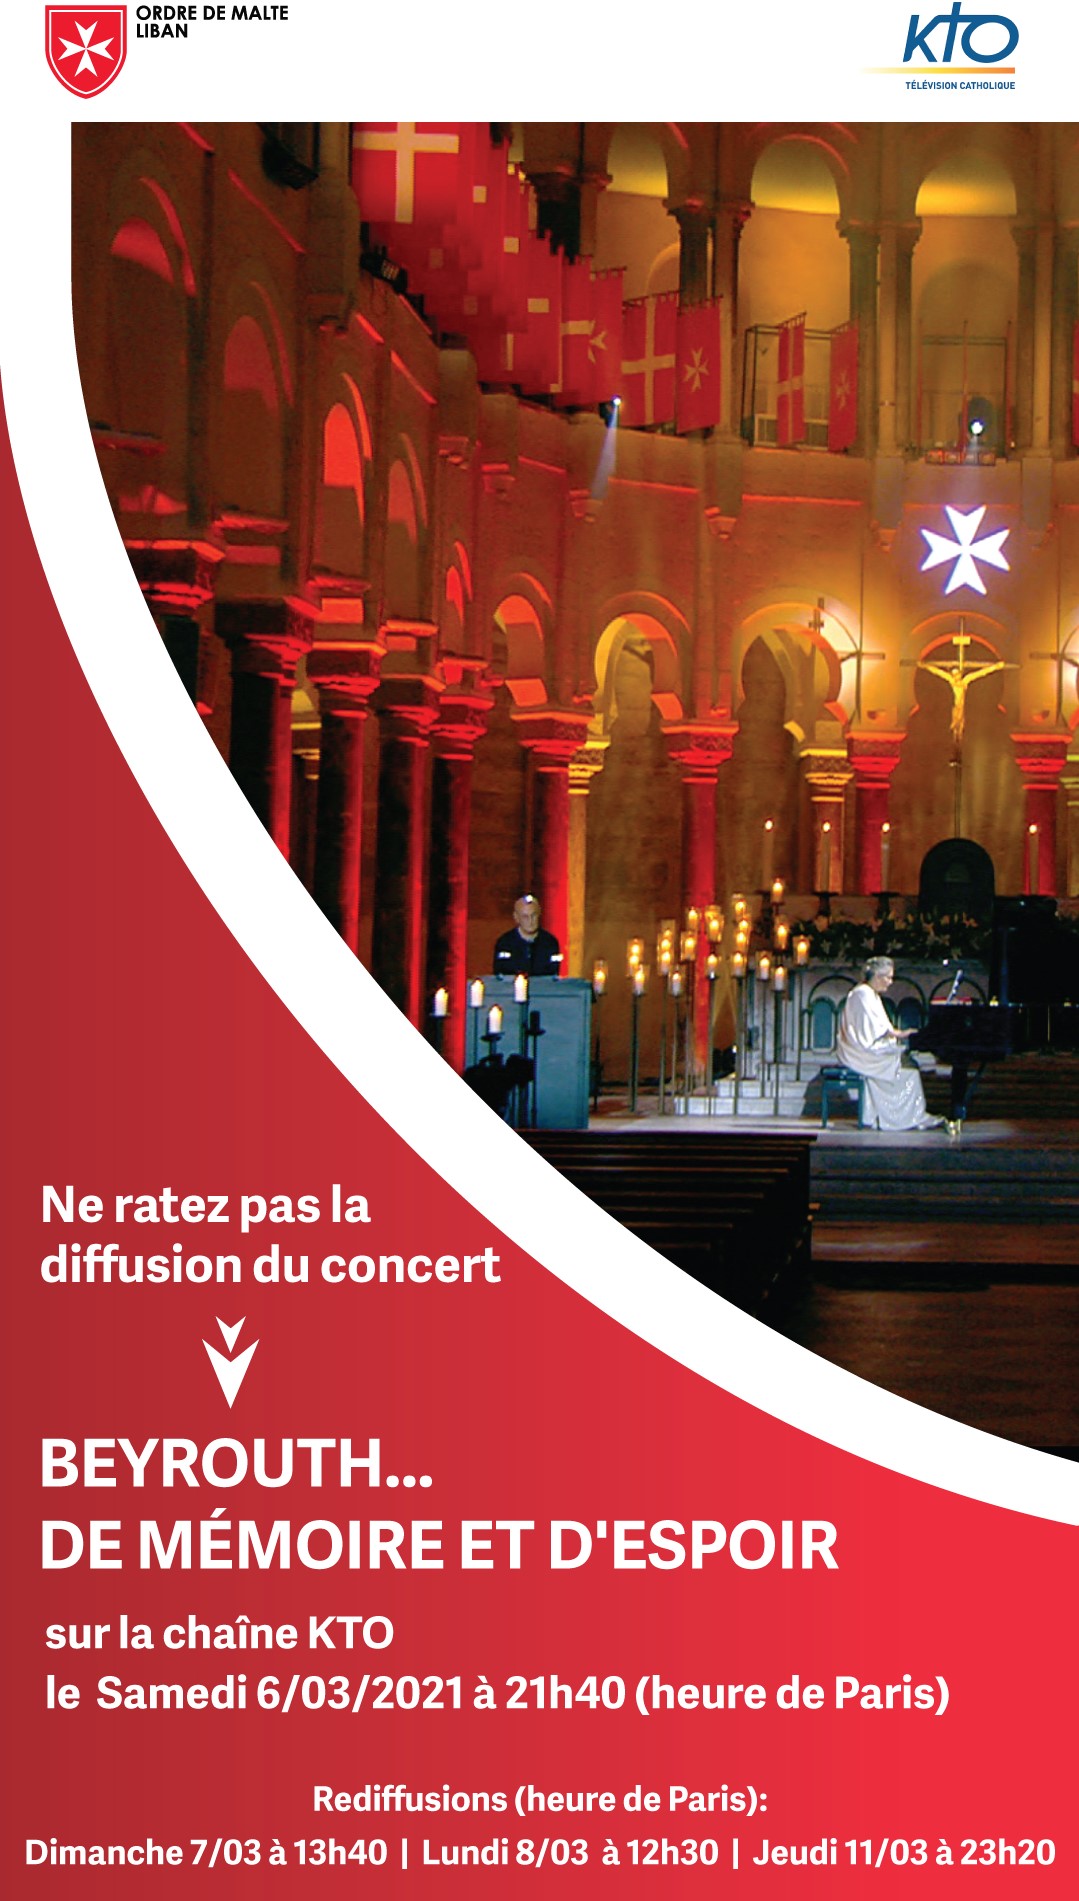 Concert sur la chaine KTO "BEYROUTH... DE MEMOIRE ET D'ESPOIR", récital Elizabeth Sombart